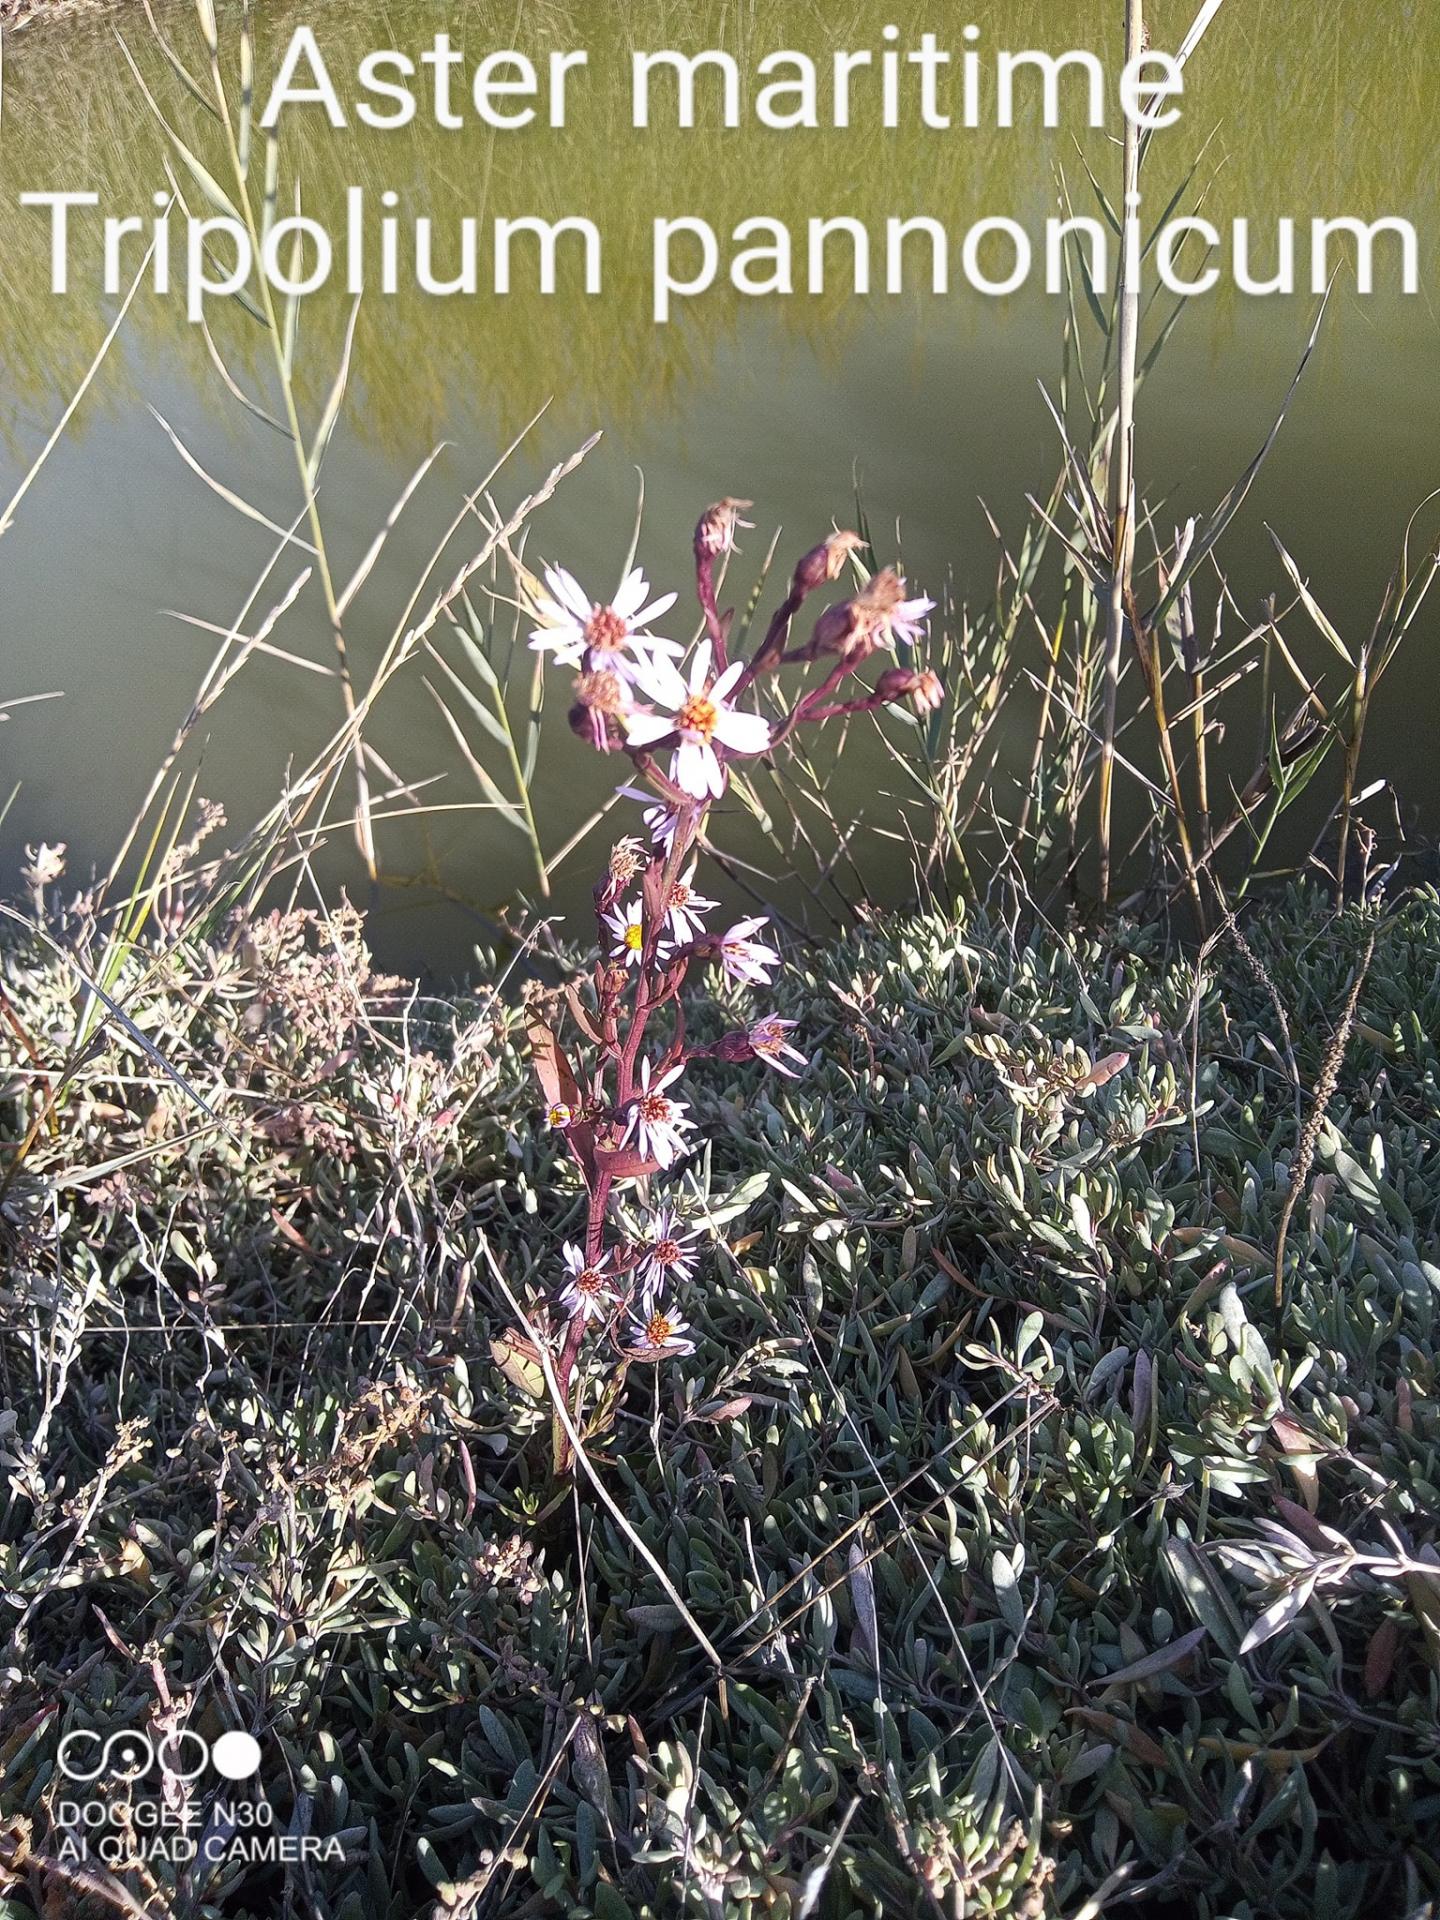 tripolium pannonicum 11/11/21